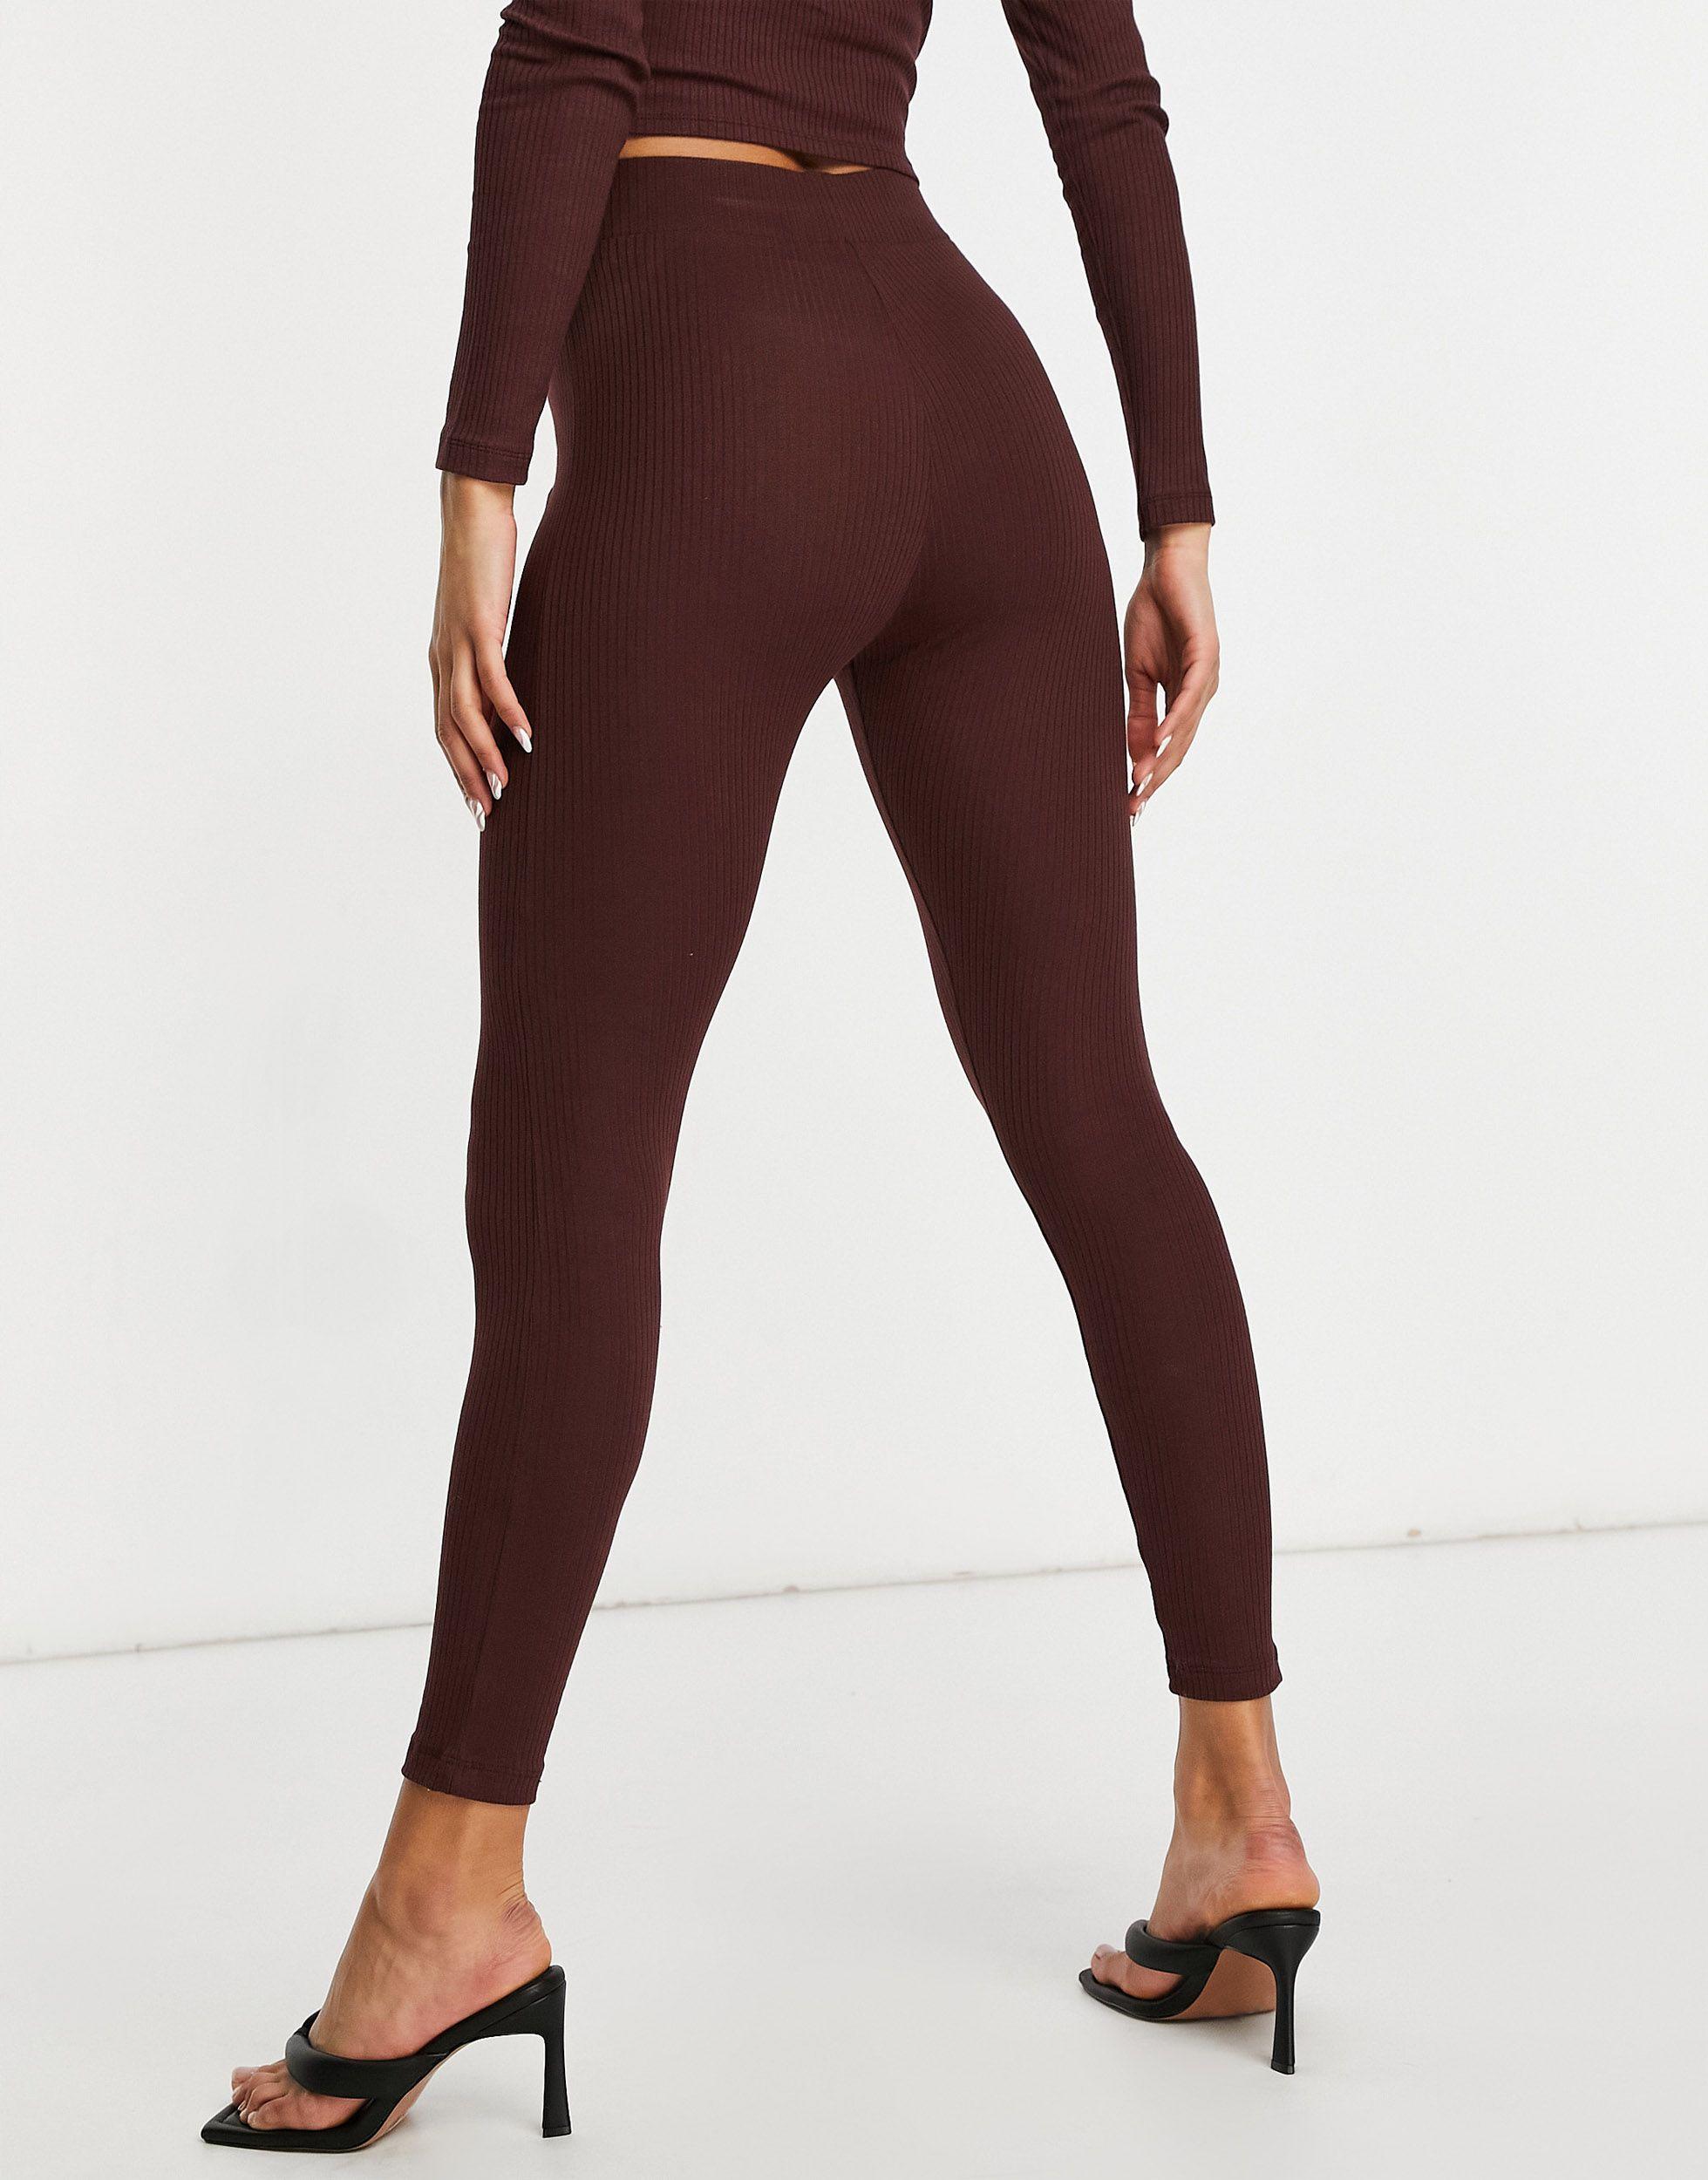 Buy Yogalicious women high rise capri leggings toadstool Online